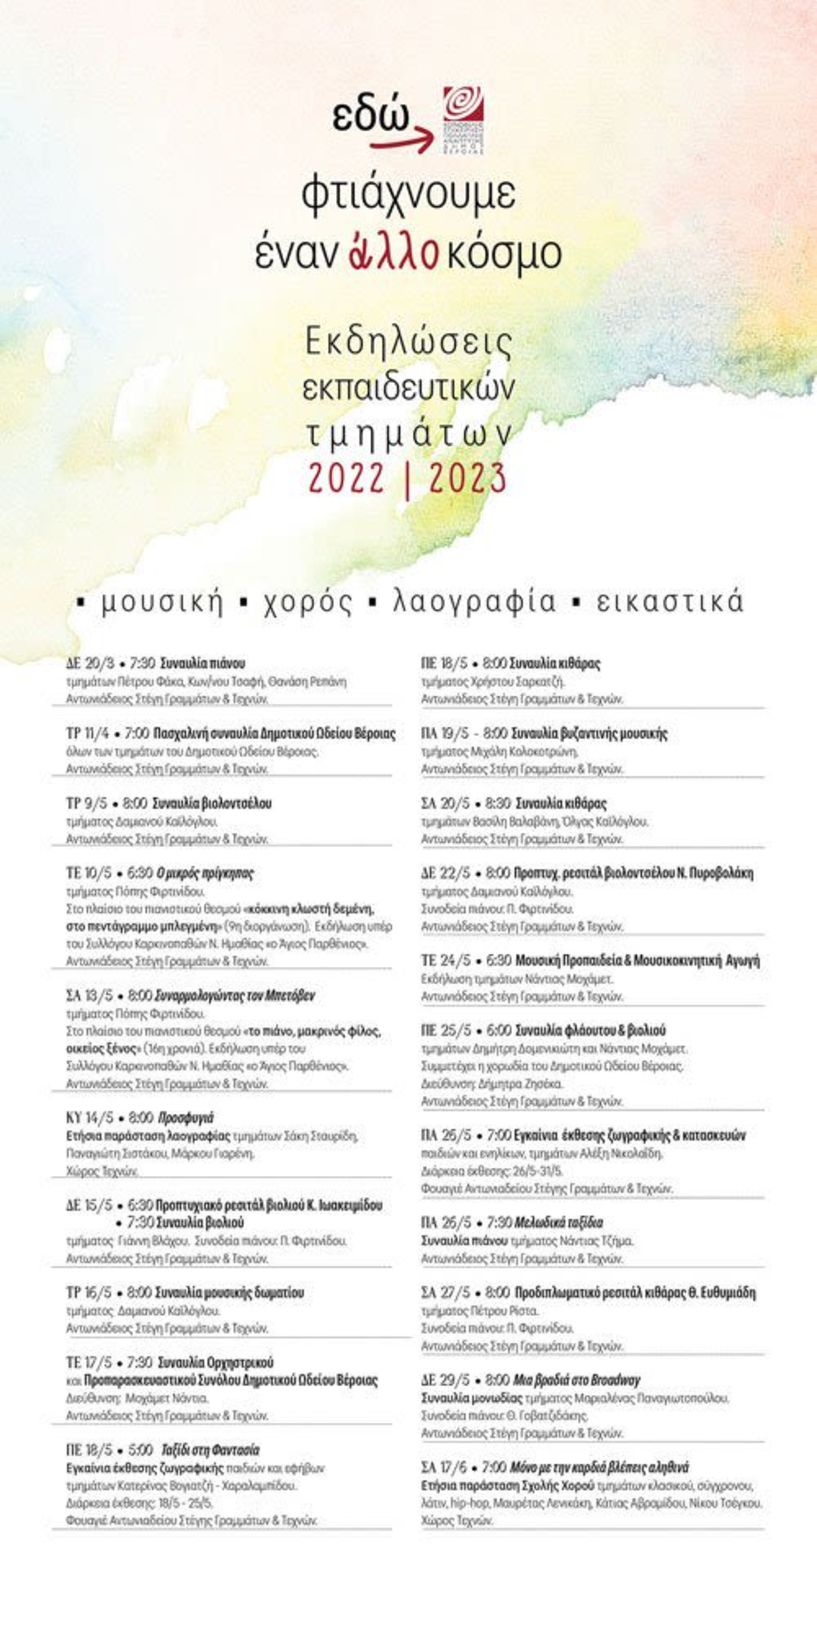 Μαθητικές εκδηλώσεις ΚΕΠΑ Δήμου Βέροιας 2022-2023